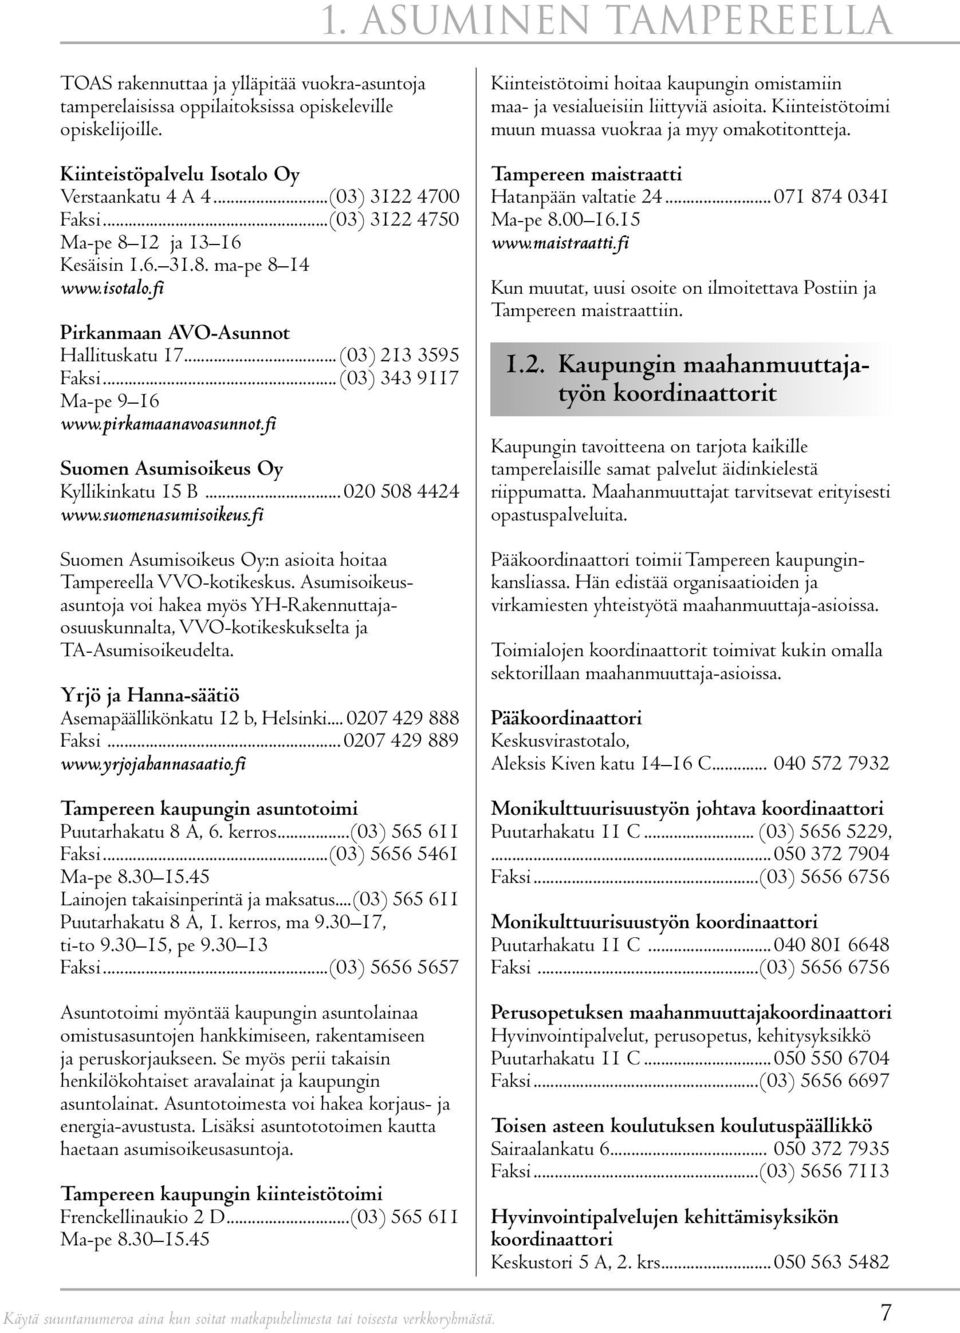 pirkamaanavoasunnot.fi Suomen Asumisoikeus Oy Kyllikinkatu 15 B... 020 508 4424 www.suomenasumisoikeus.fi Suomen Asumisoikeus Oy:n asioita hoitaa Tampereella VVO-kotikeskus.